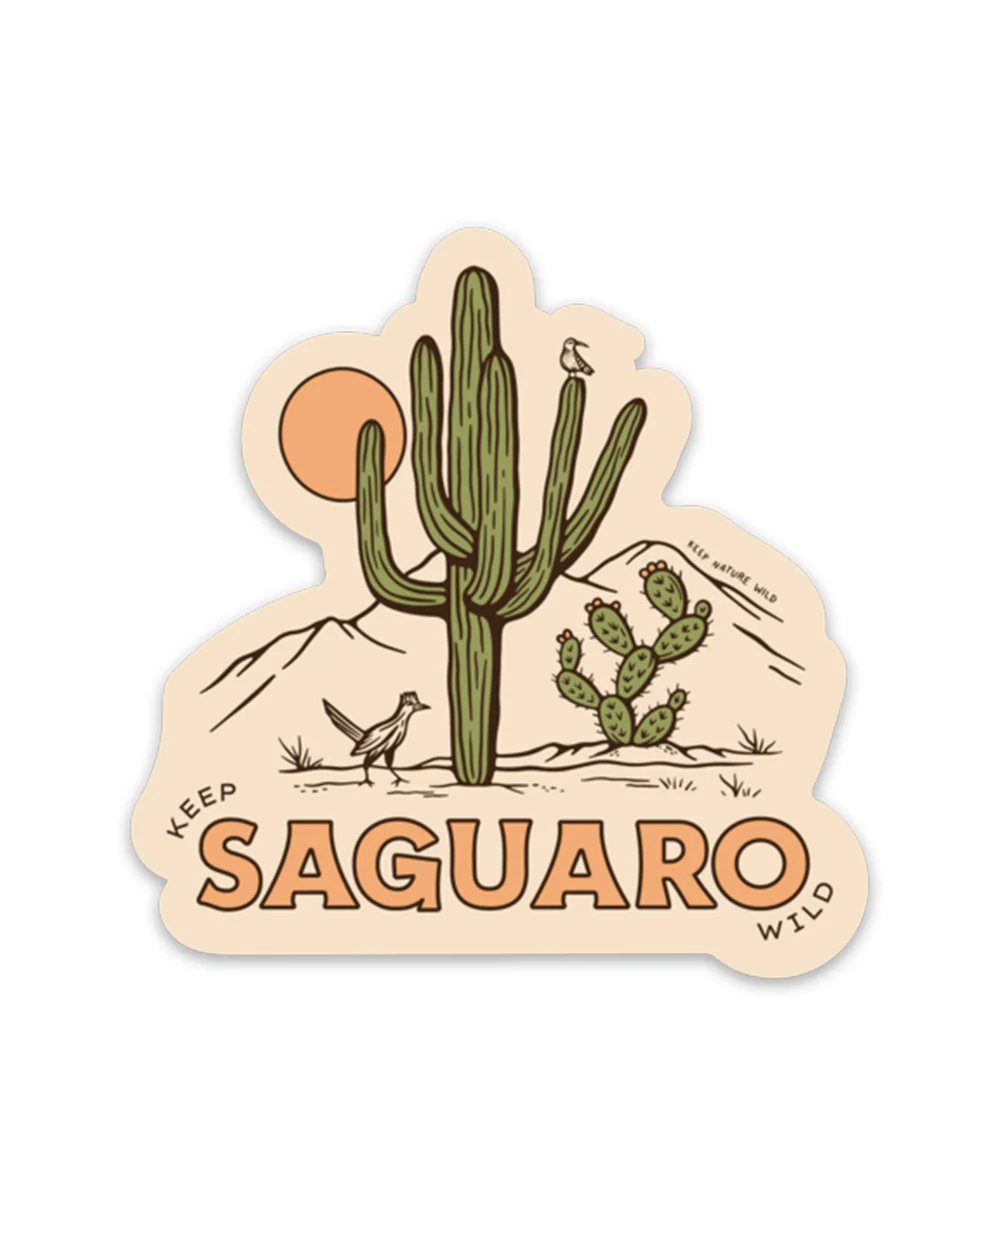 Keep Saguaro Wild Sticker - The Farmhouse AZ